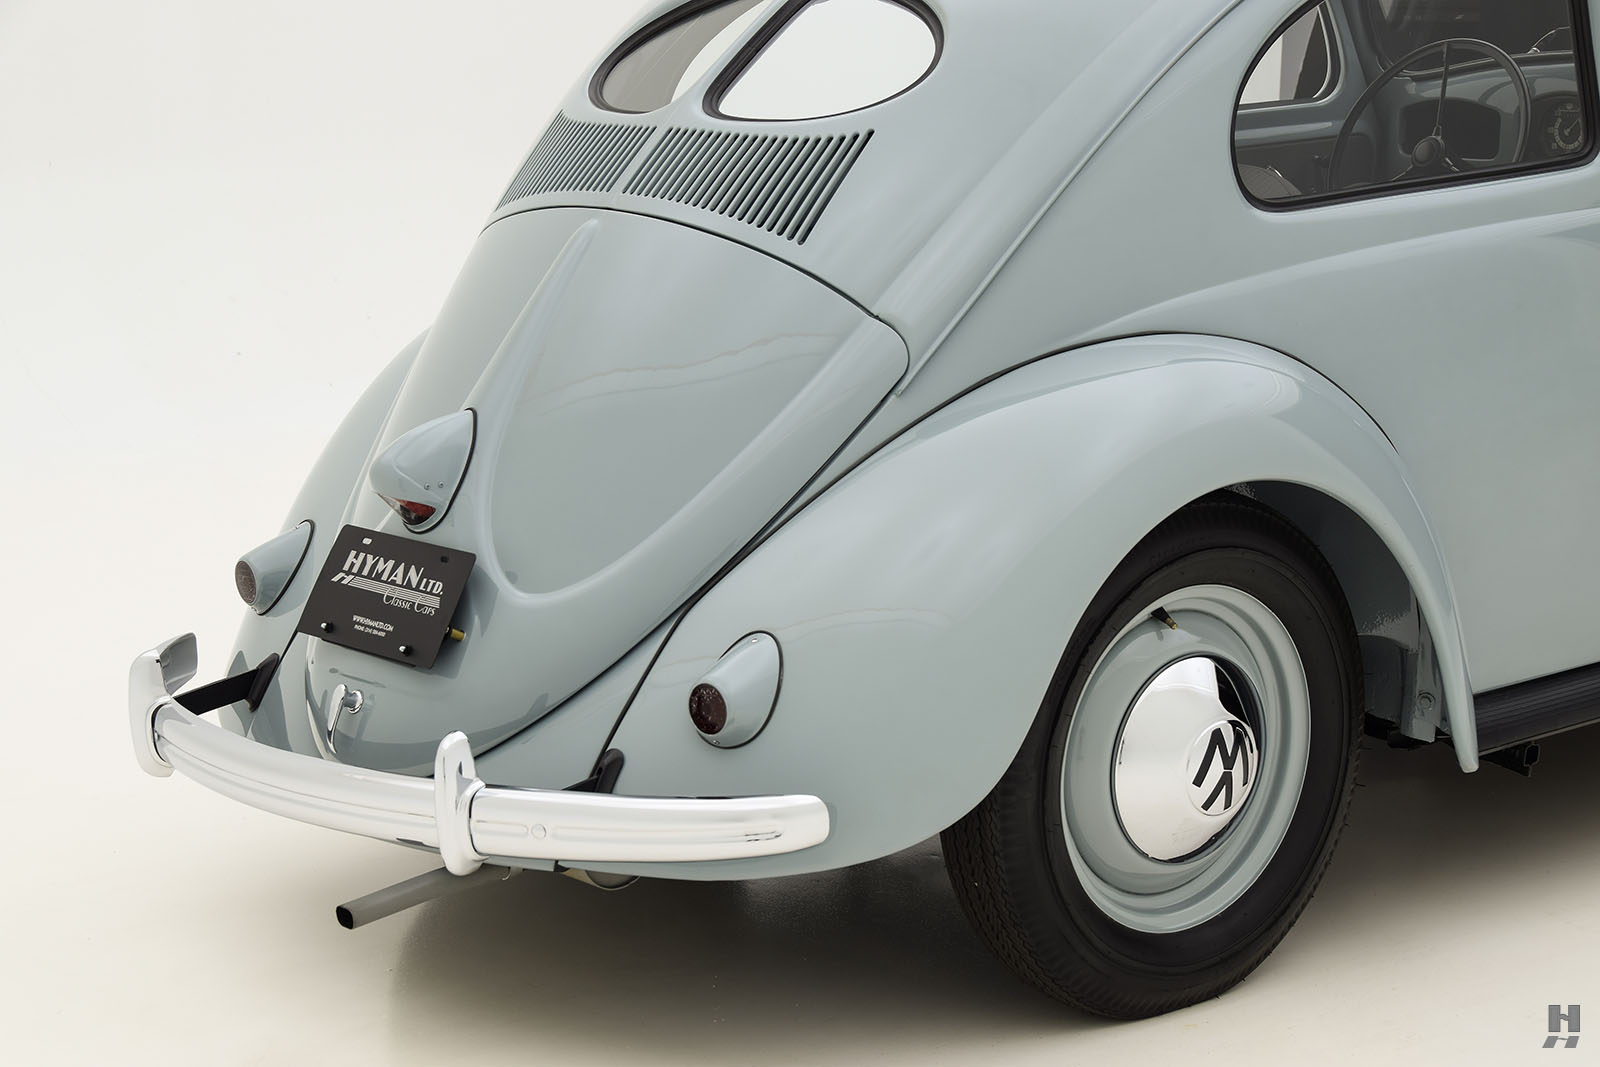 1950 volkswagen beetle